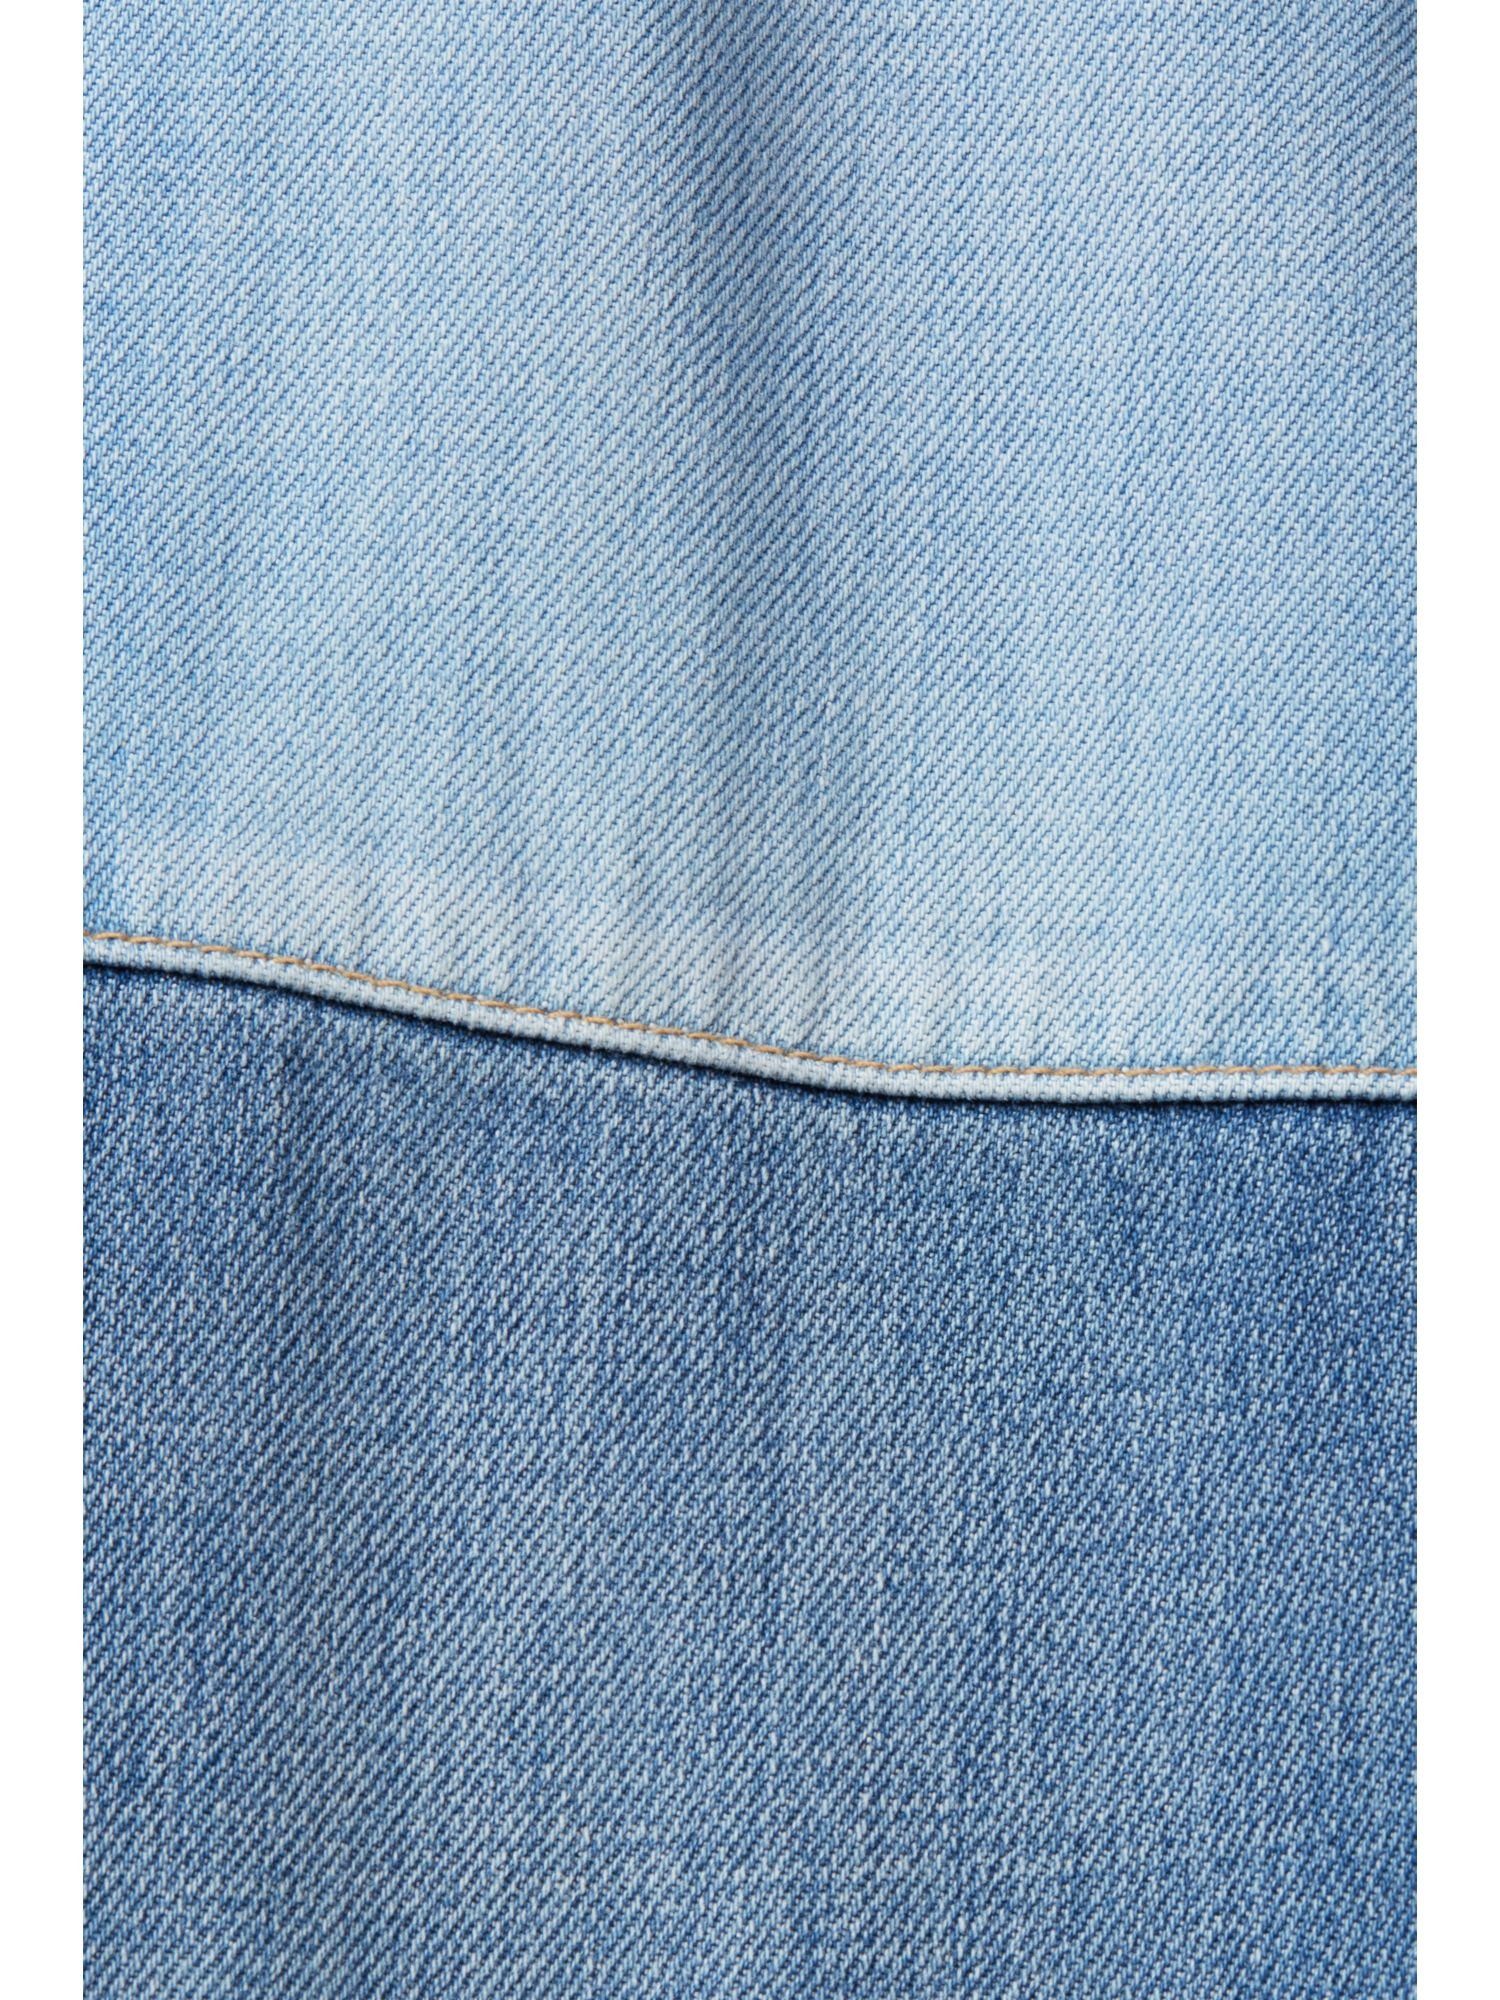 edc by Loose-fit-Jeans Esprit Denim Jeans aus gemischtem